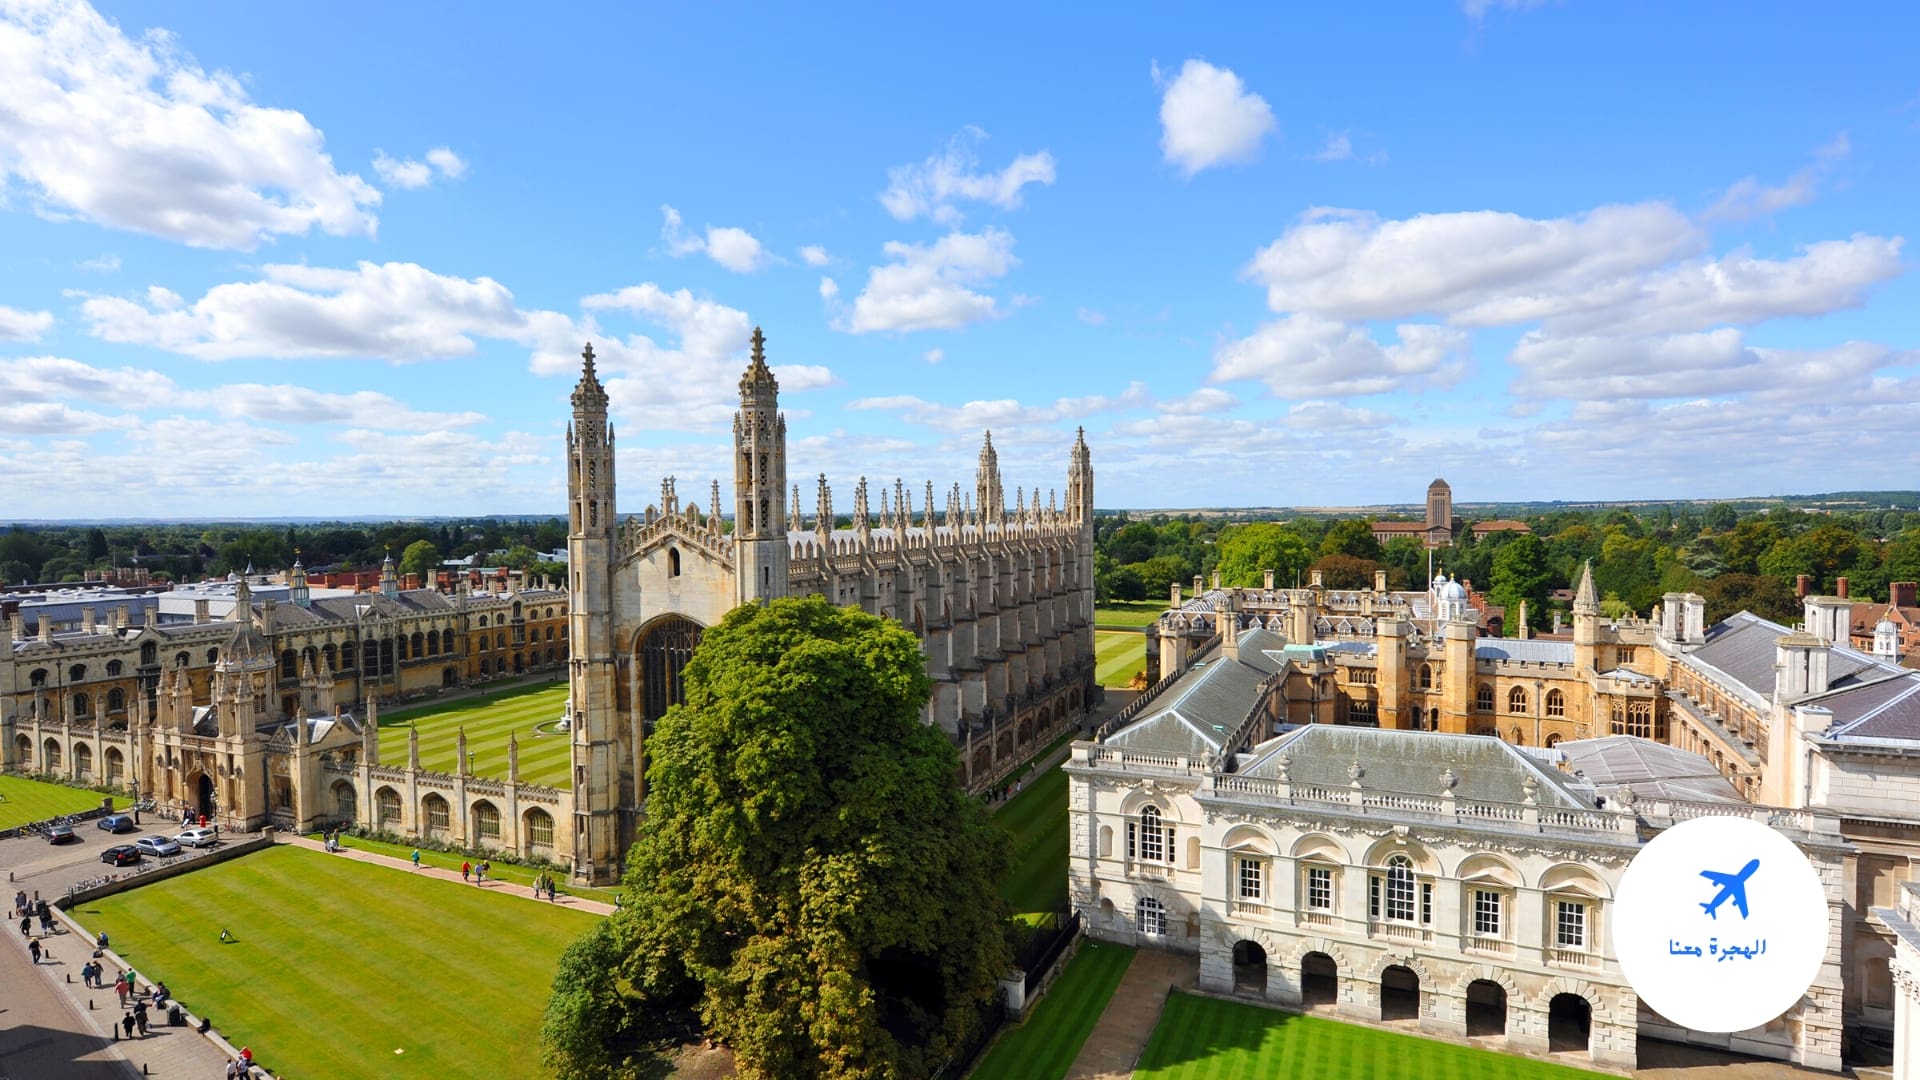 Cambridge university was founded. Кингс колледж Кембридж. Королевский колледж Кембриджского университета. Кембридж Англия колледжи. Кембридж университет 1209.